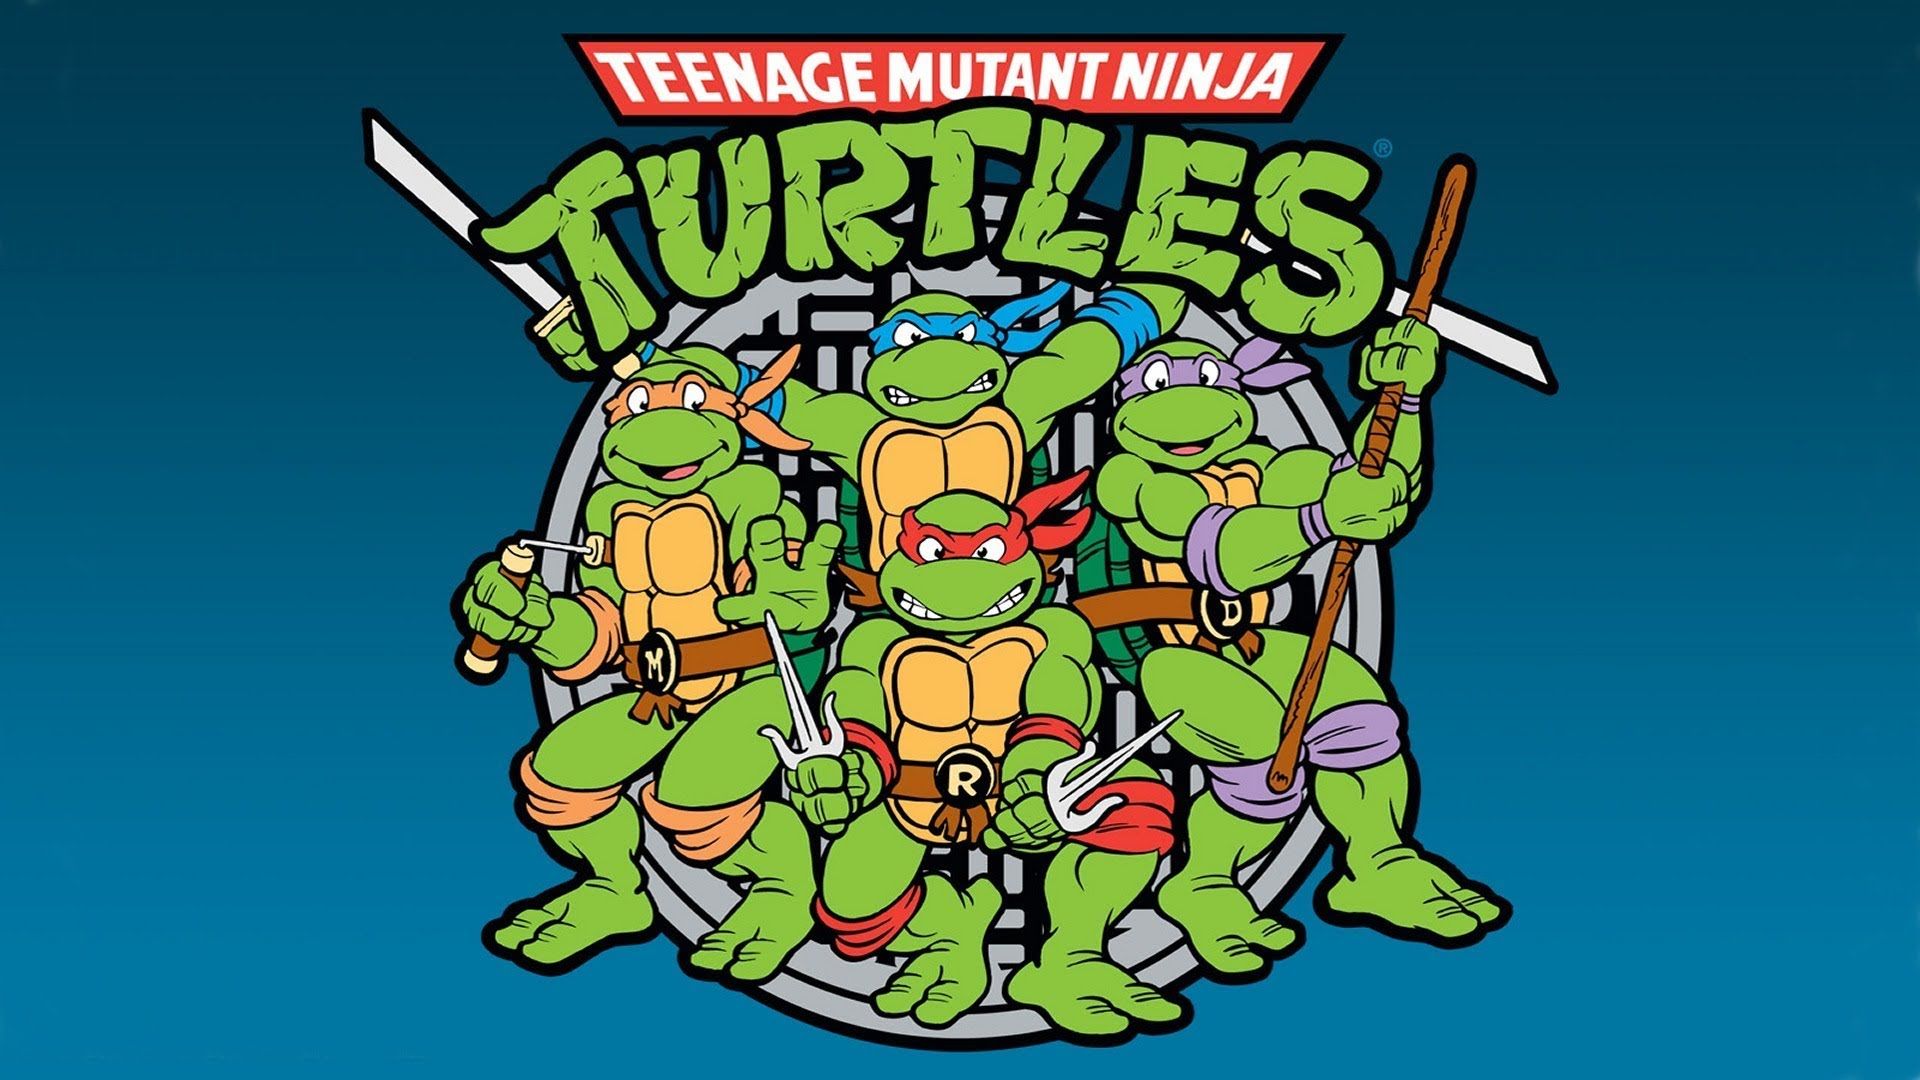 Teenage Mutant Ninja Turtles Pc Wallpaper On